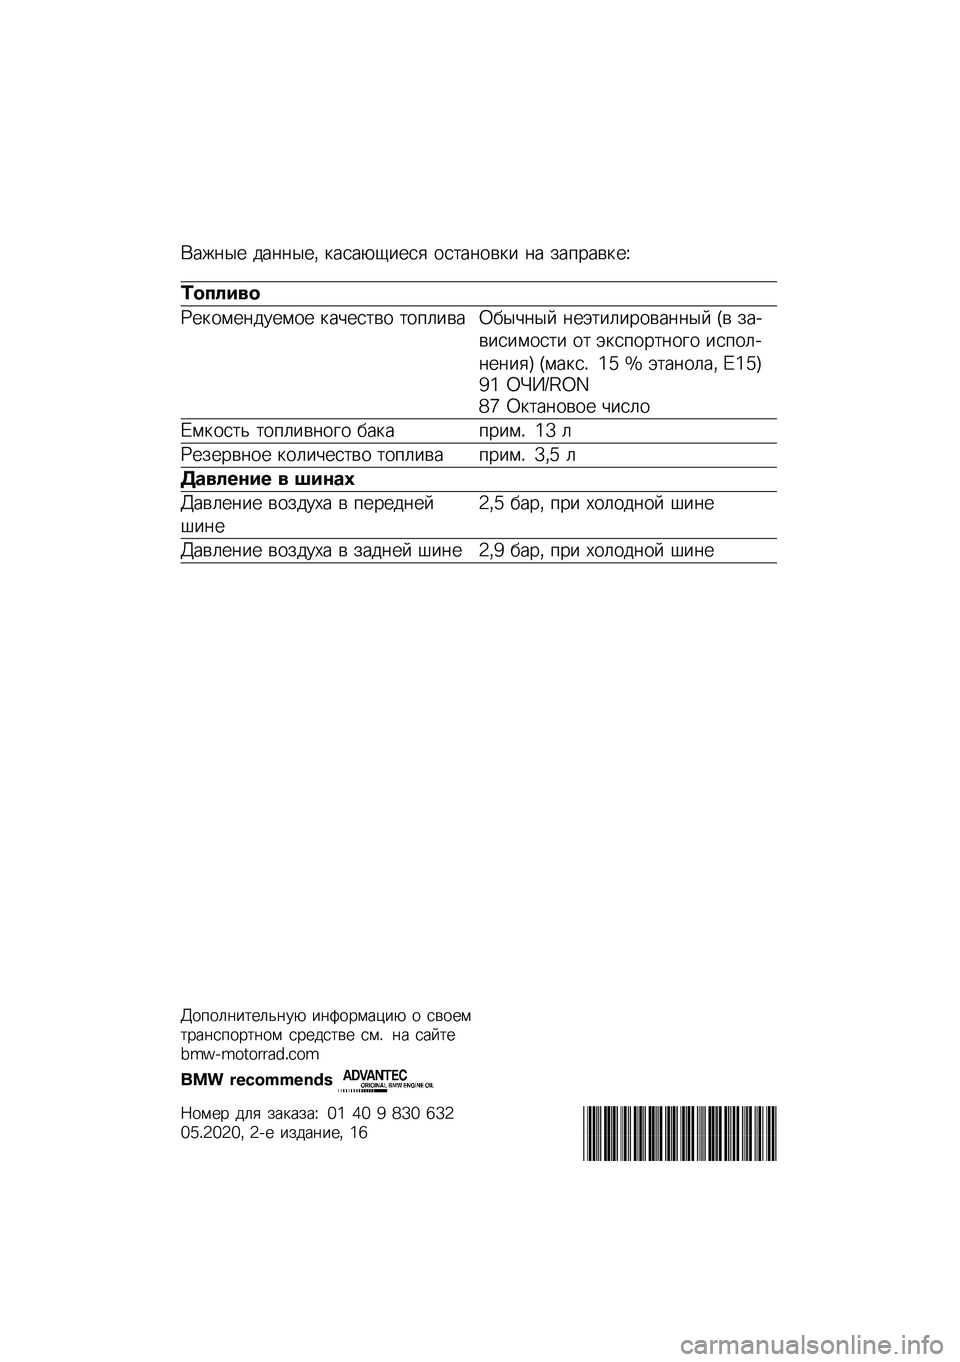 BMW MOTORRAD F 900 R 2020  Руководство по эксплуатации (in Russian) �(���	�� ���	�	���* �
����-�1���� ���
��	���
� �	� ���%����
��O
�	������
�P��
����	������ �
��&���
�� �
��%���� �2� ��&�	�� �	��+�
������